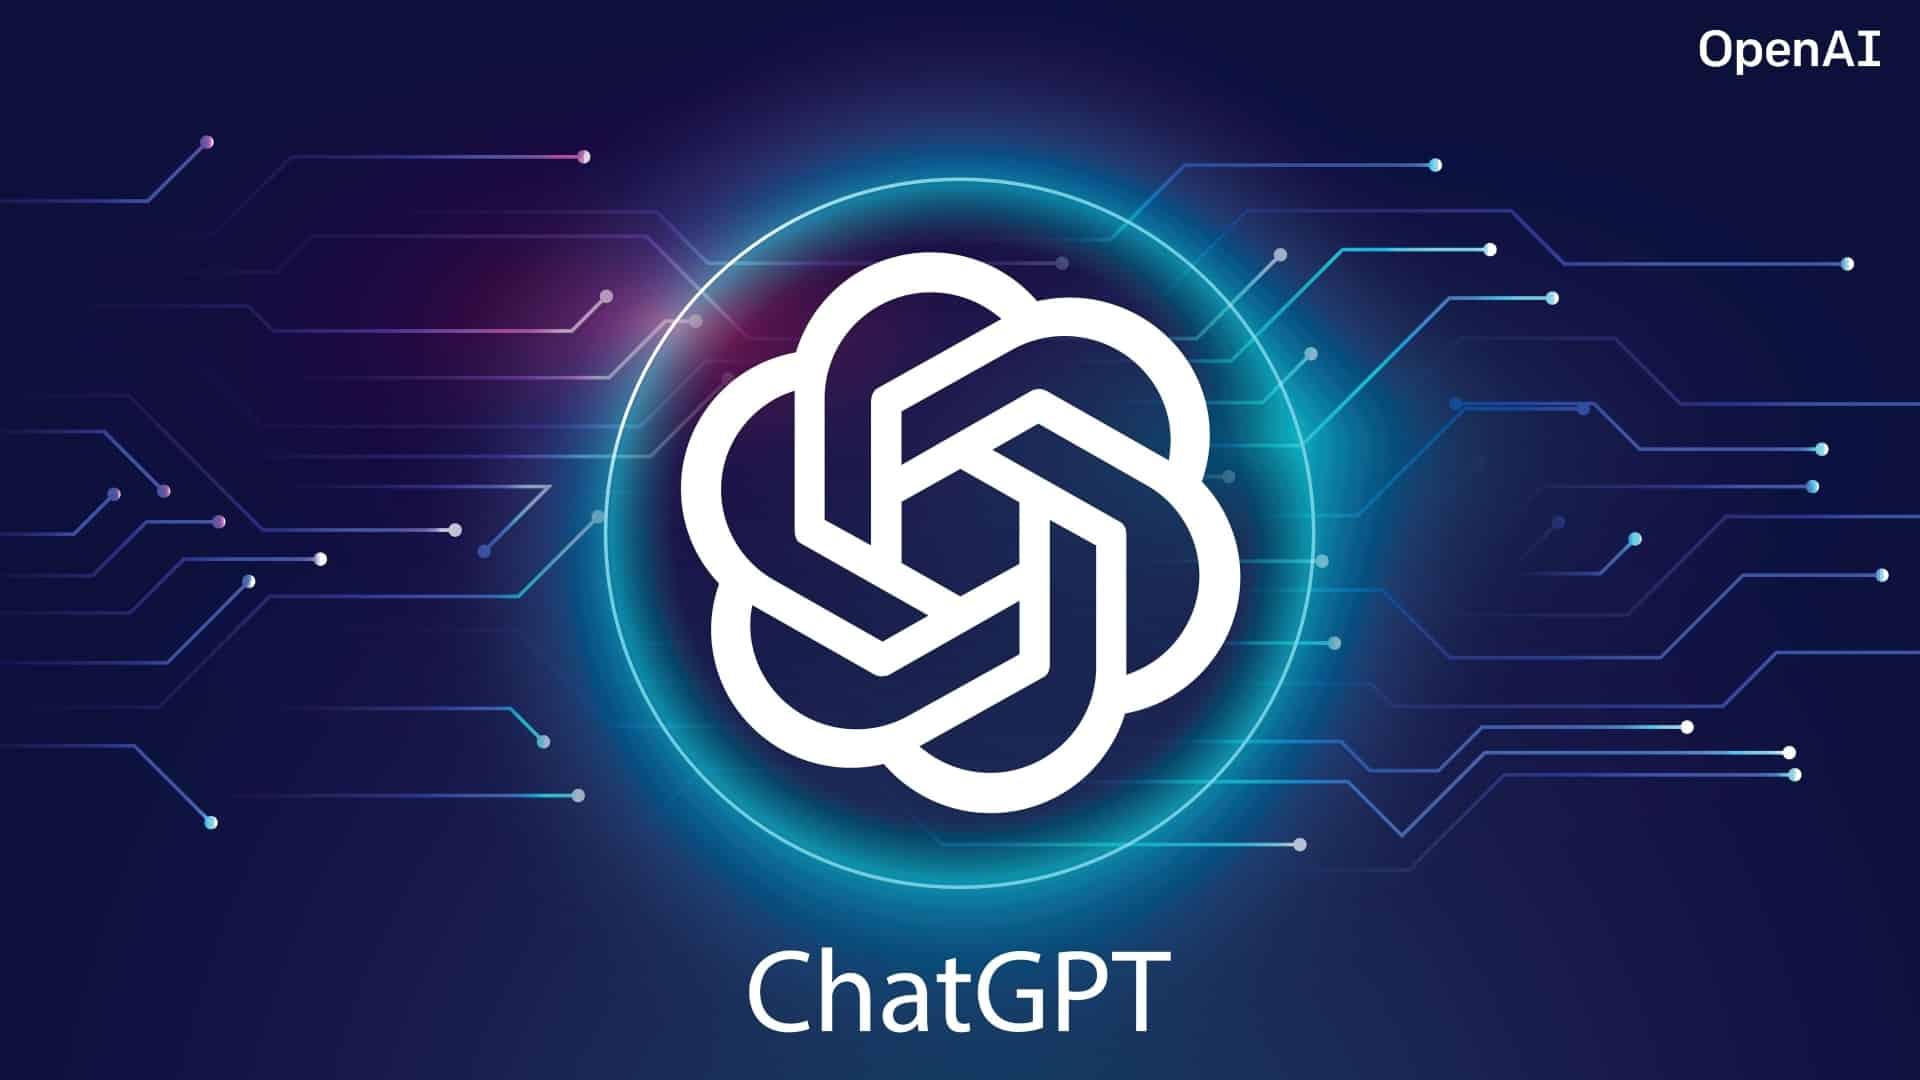 这张图片展示了OpenAI的ChatGPT标志，背景是深蓝色调的电路板图案，整体设计科技感强，色彩对比鲜明。